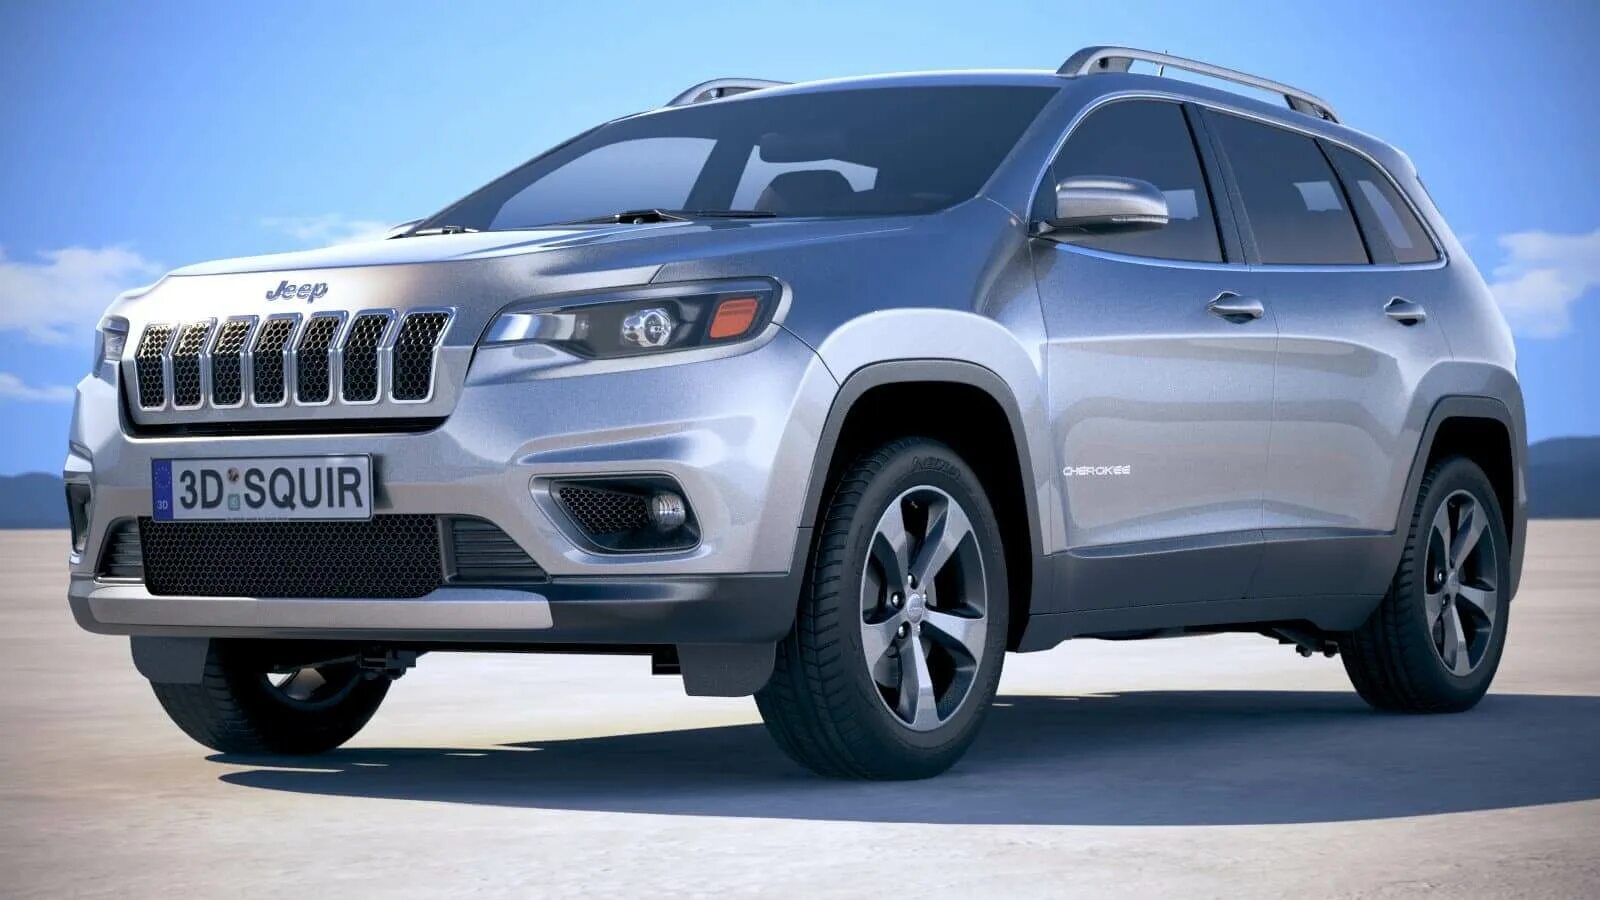 Cherokee limited. Jeep Cherokee 2019. Джип Чероки Лимитед 2019. Jeep Grand Cherokee Limited 2019. Jeep Cherokee Limited 2018.